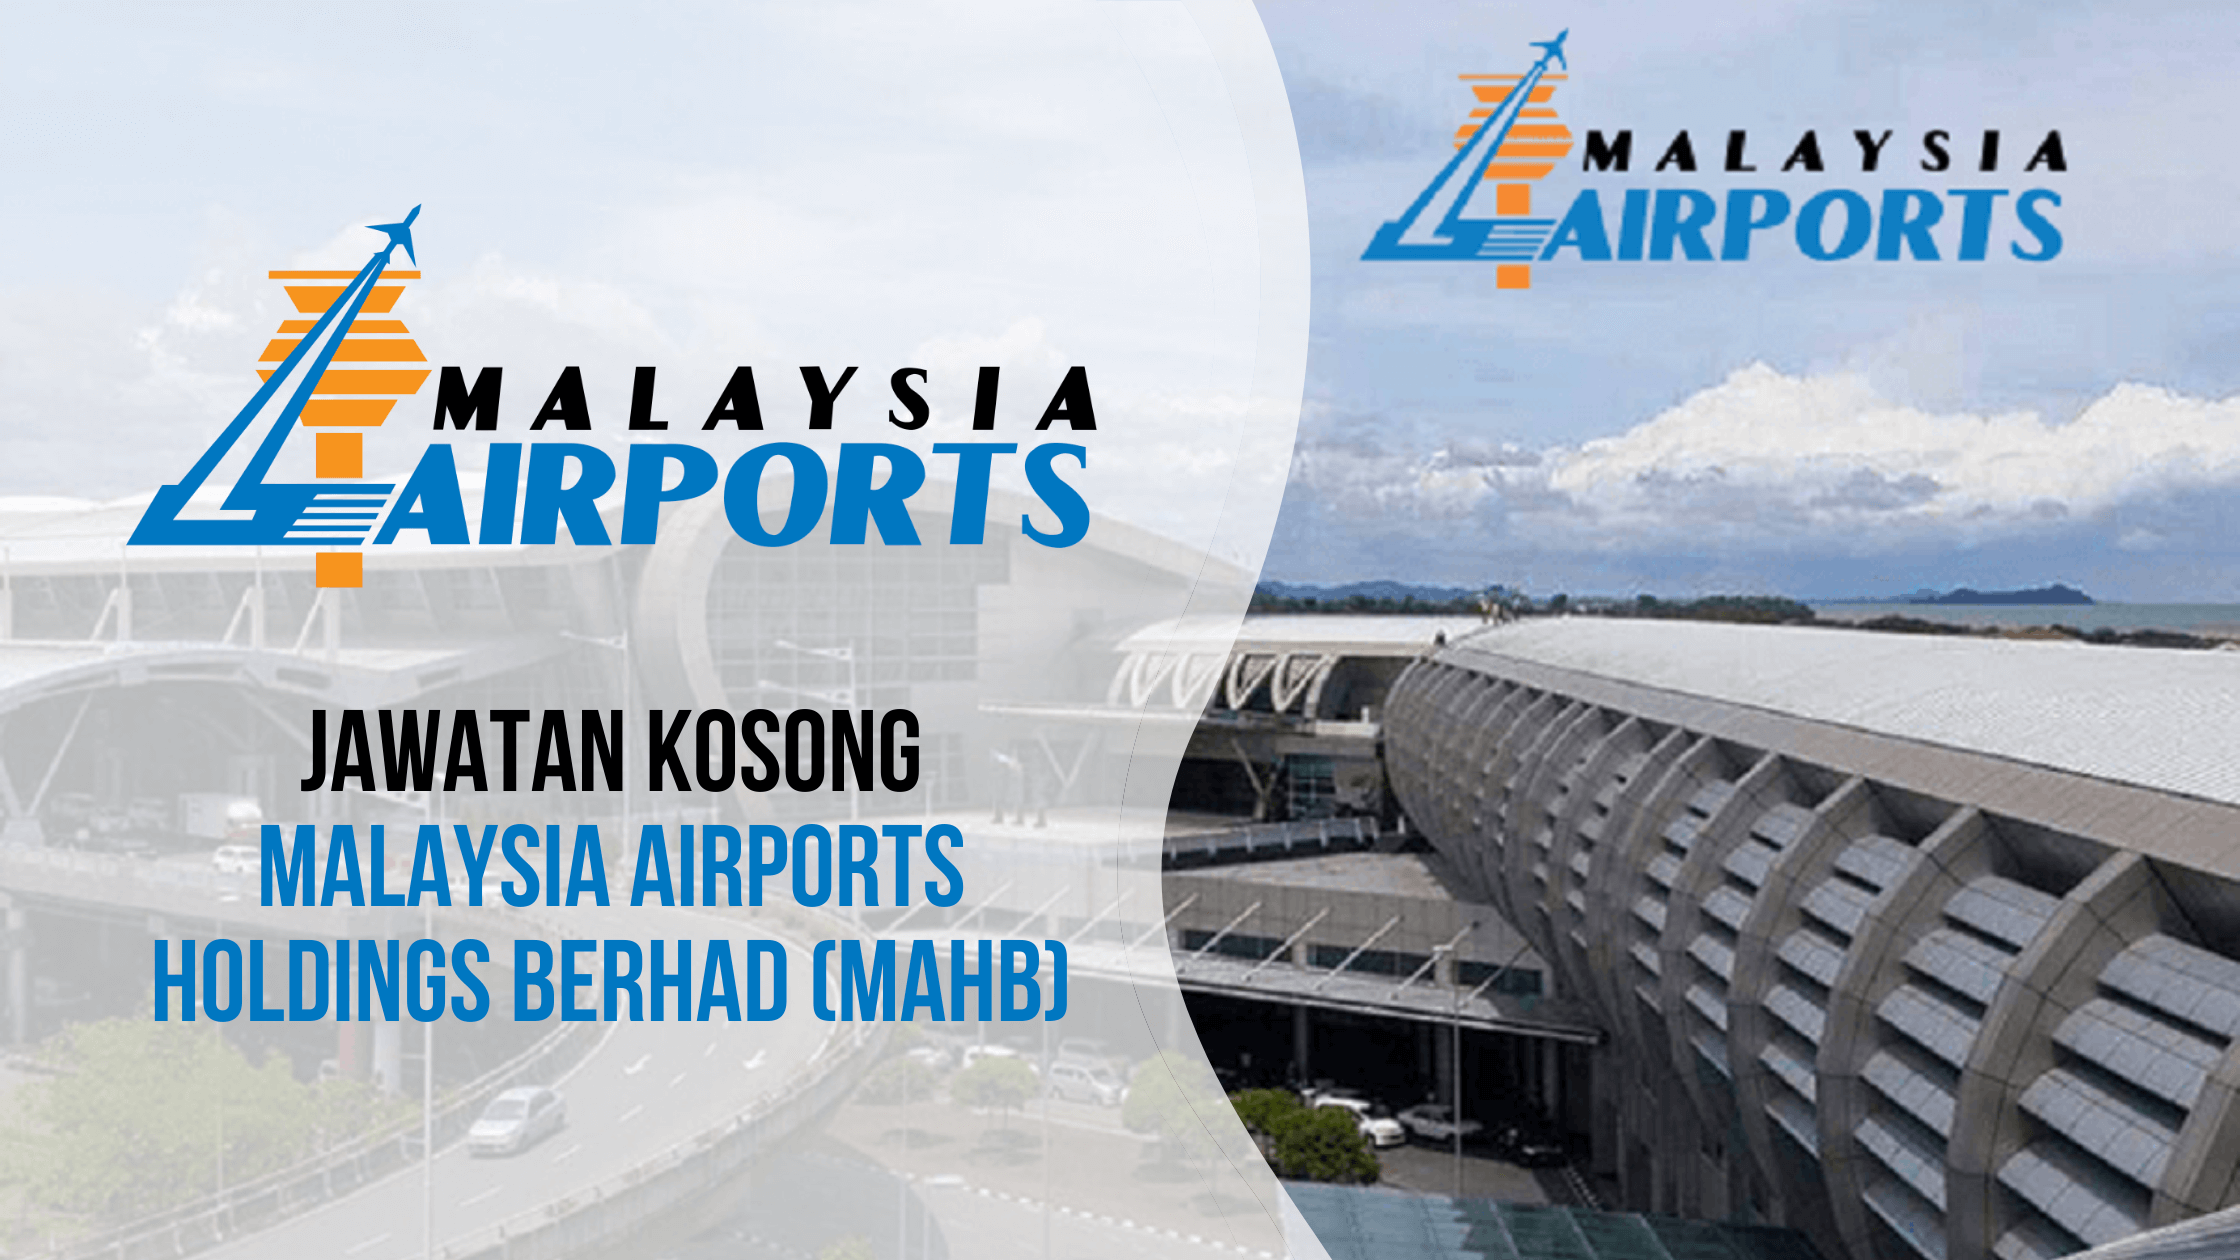 JAWATAN KOSONG MALAYSIA AIRPORTS